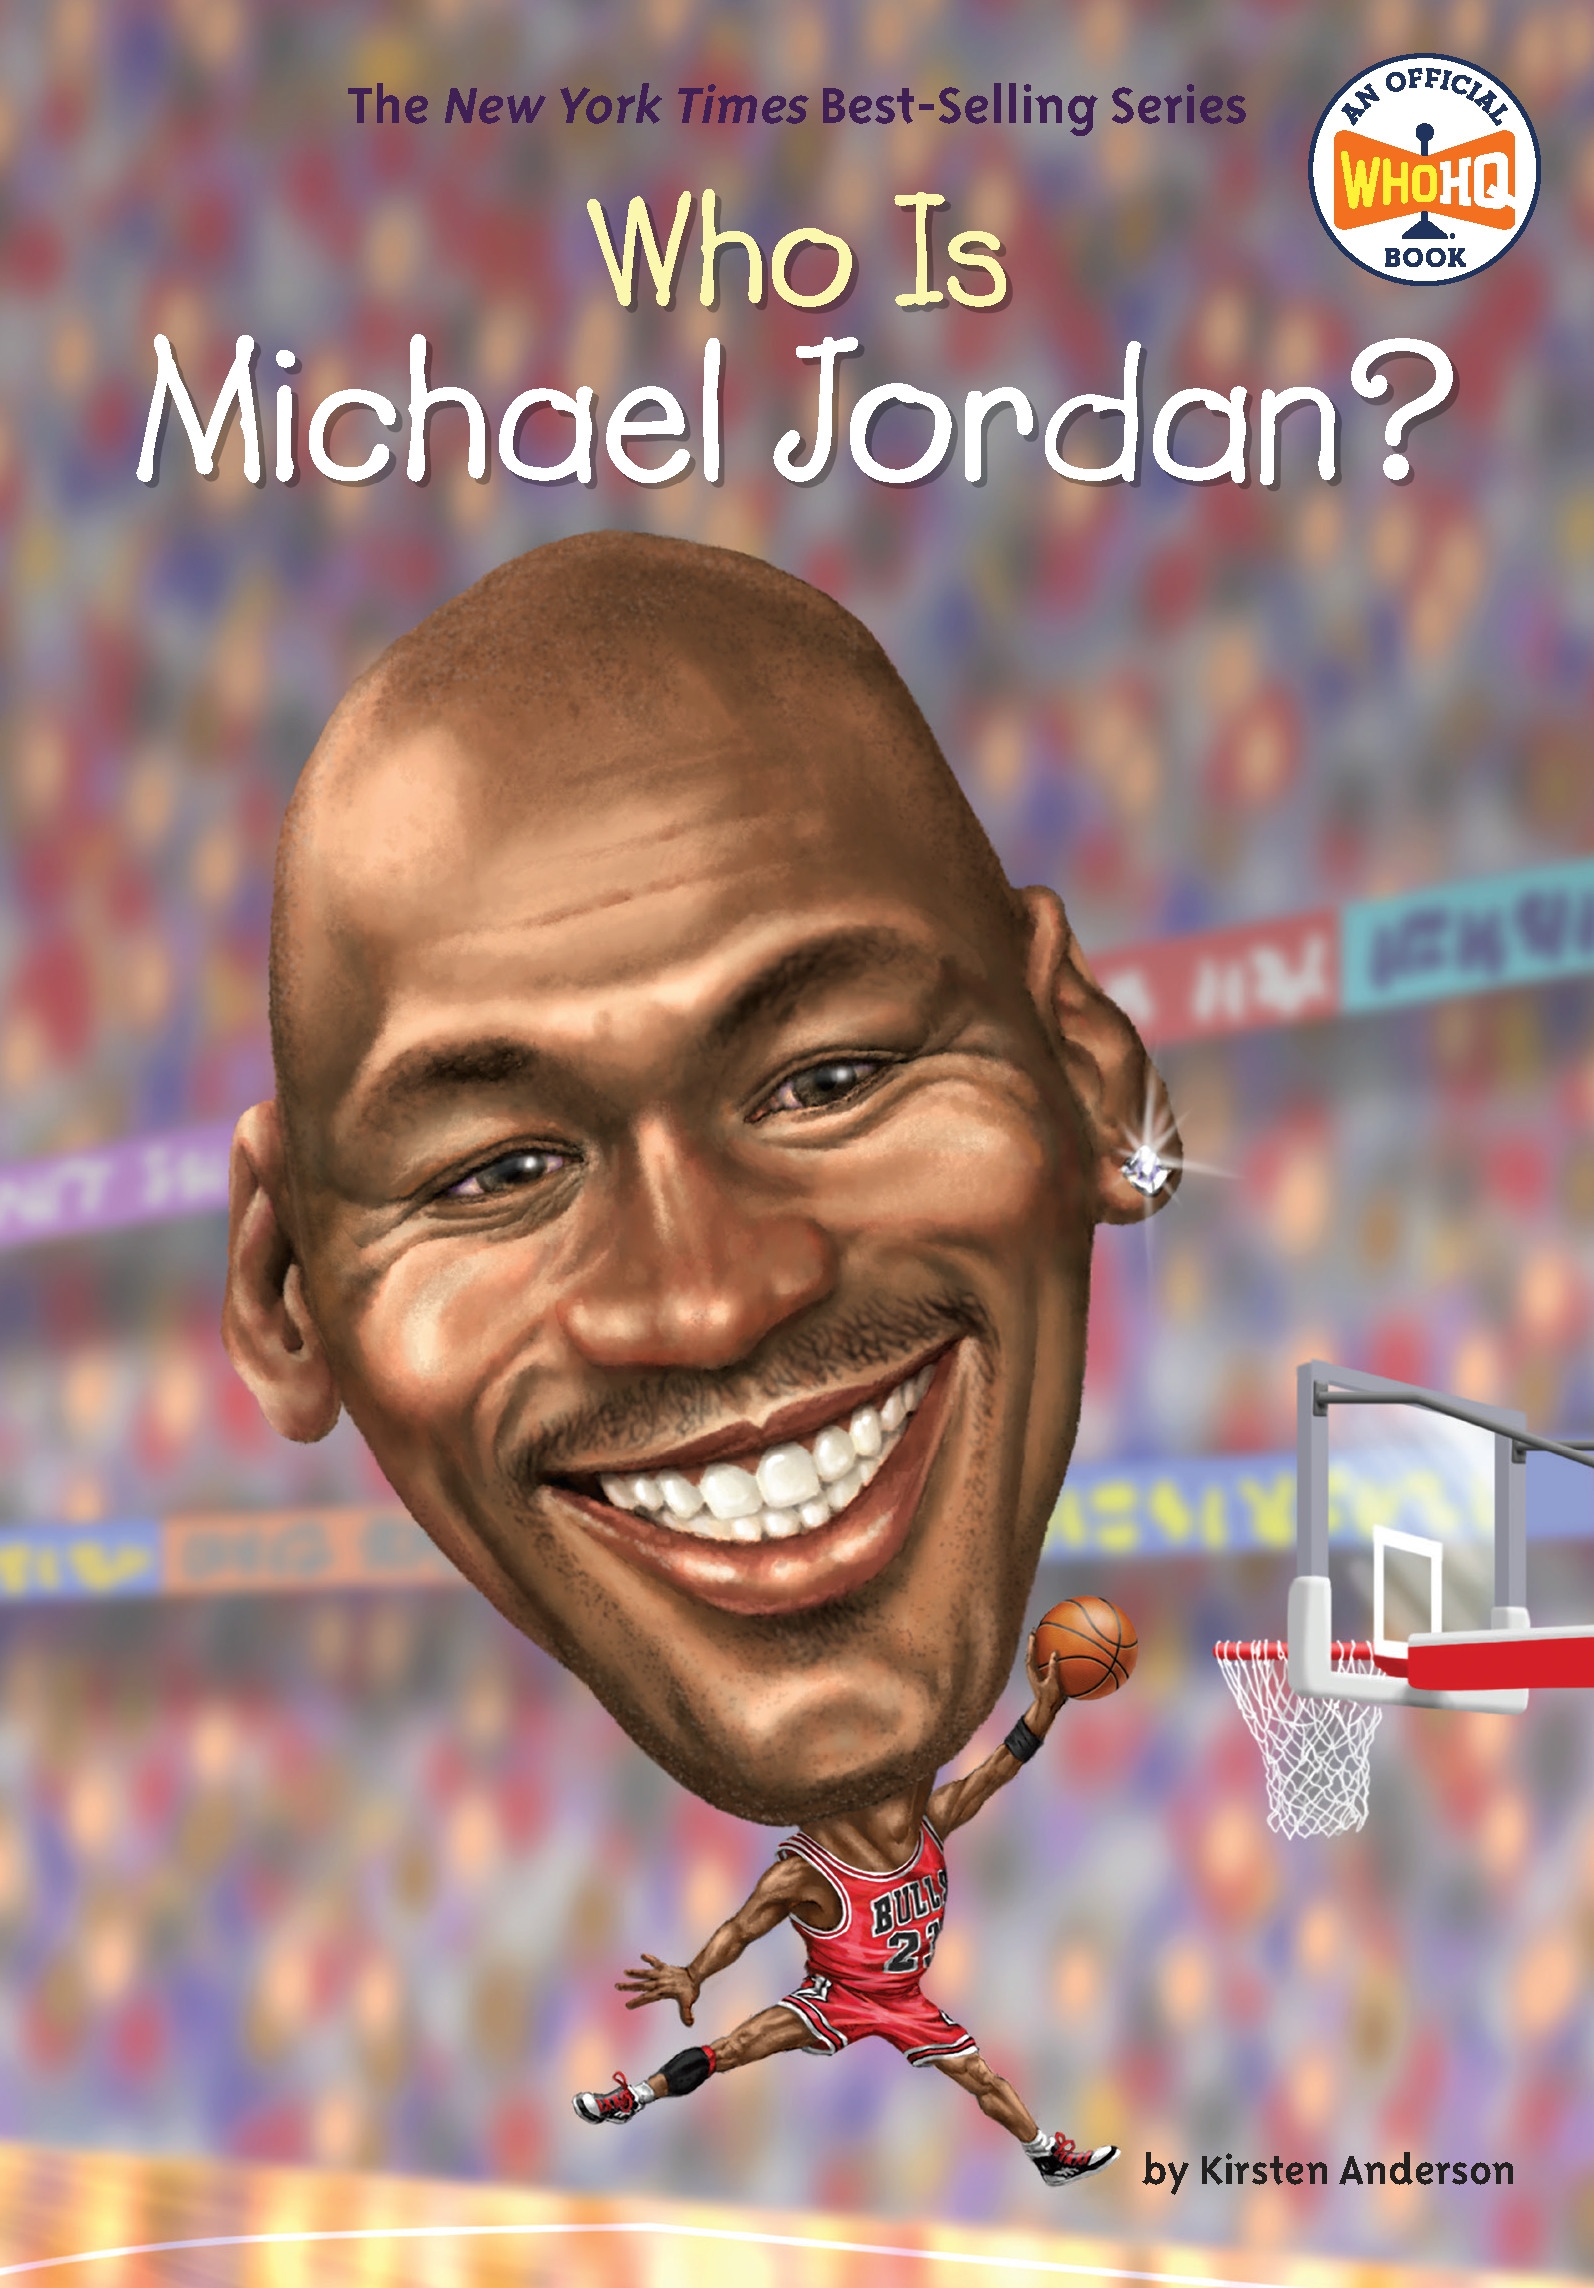 biography for michael jordan